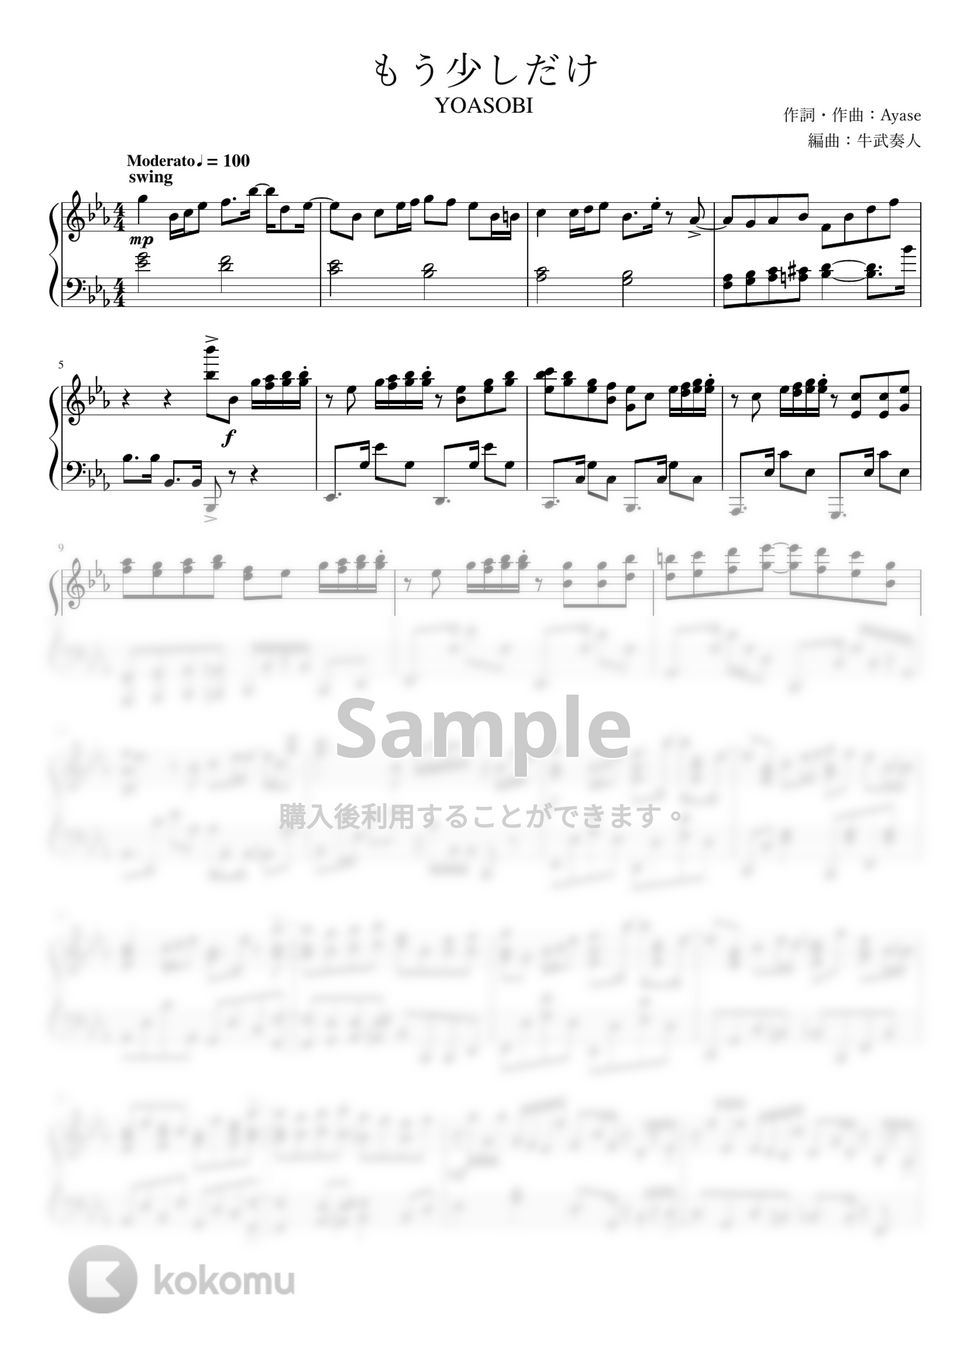 YOASOBI - もう少しだけ (上級ピアノソロ) by 牛武奏人